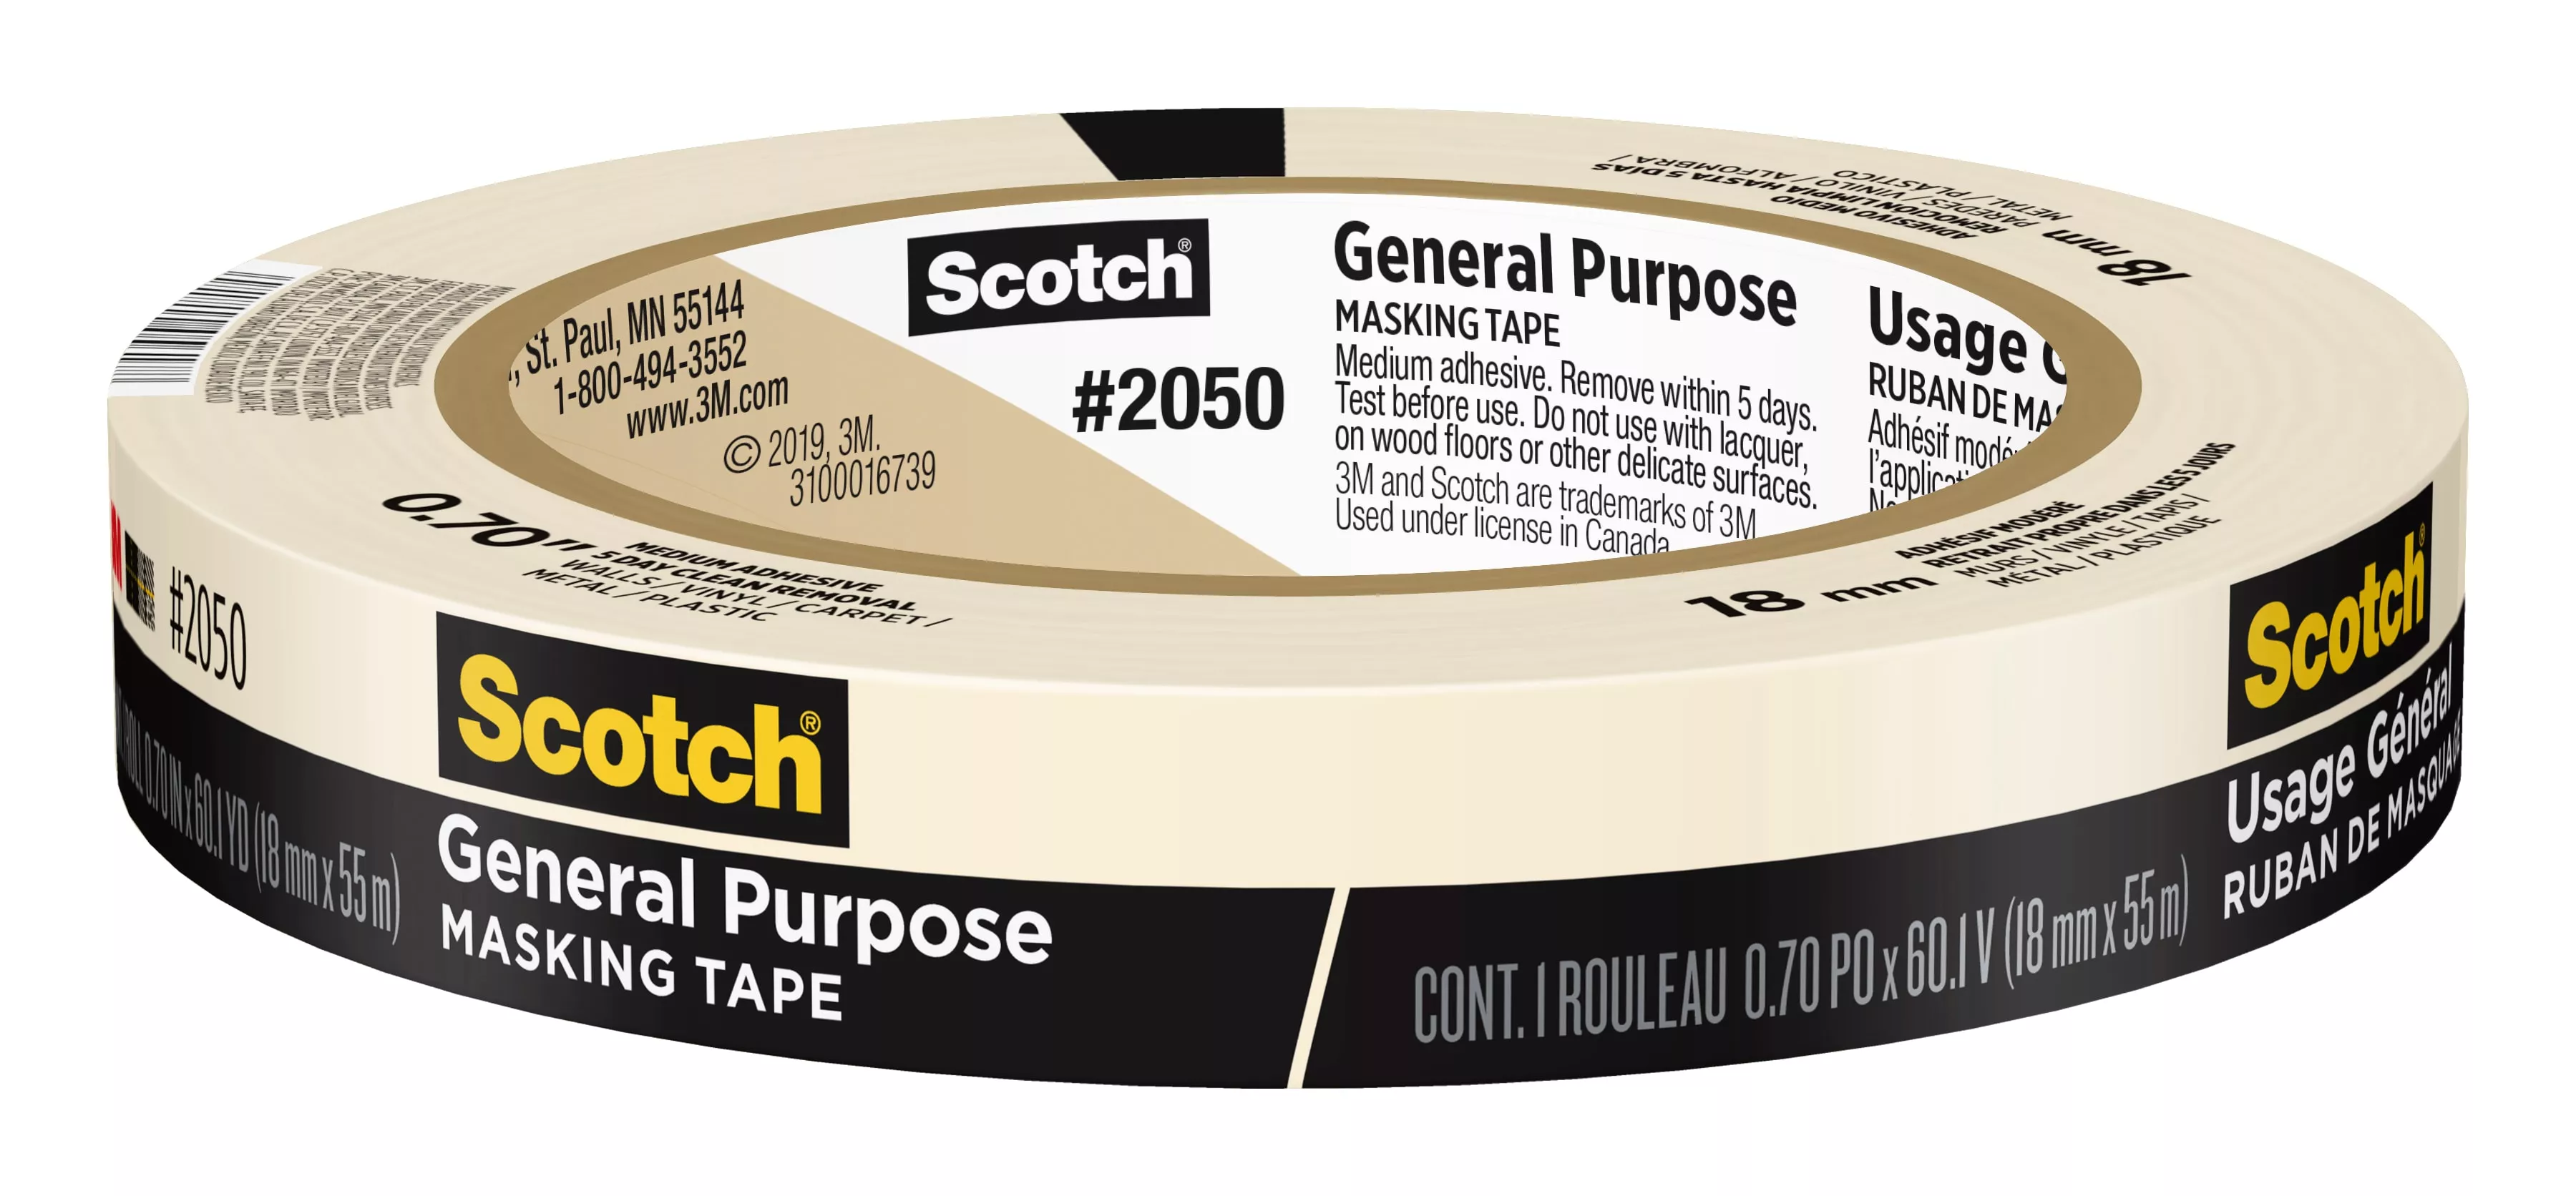 Scotch® General Purpose Masking Tape 2050-18AP, 0.70 in x 60.1 yd (18mm
x 55m)